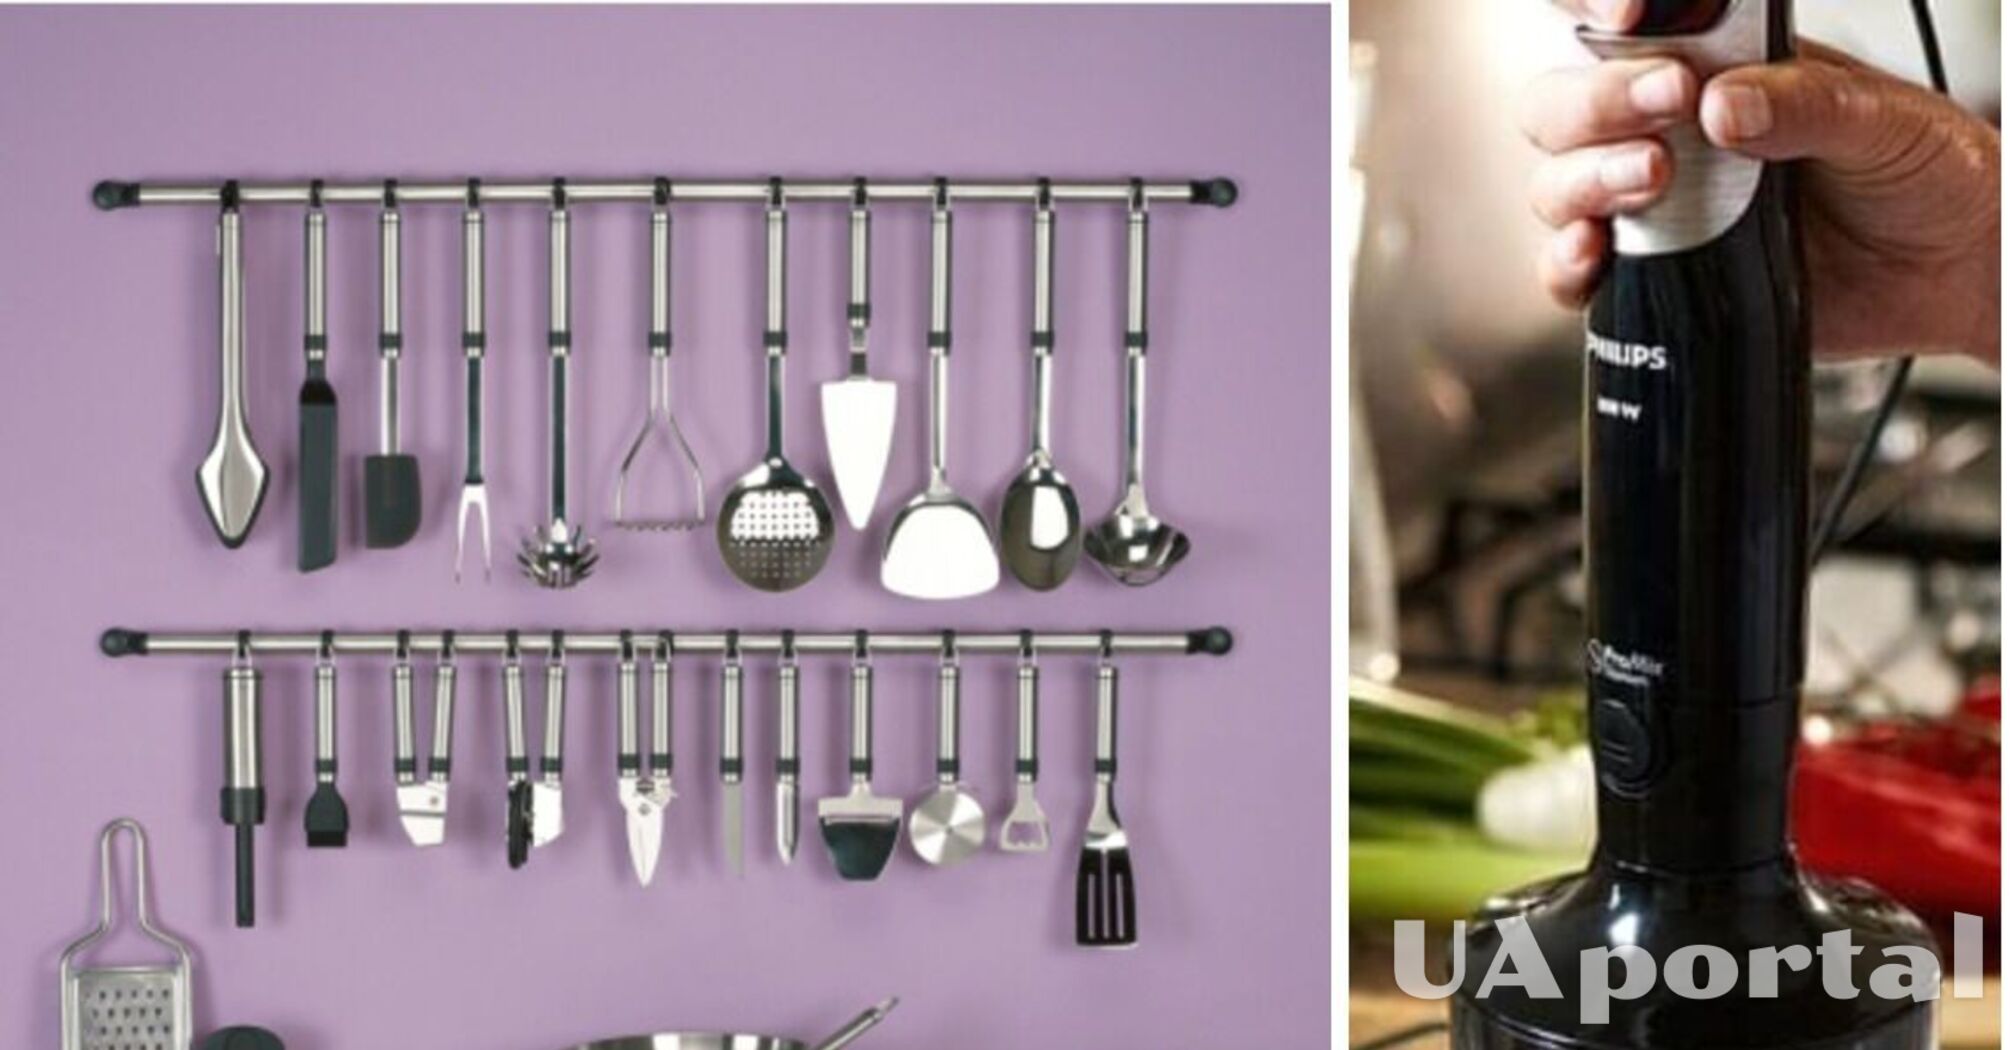 10 удобных кухонных инструментов для дома, которые используются на профессиональных кухнях